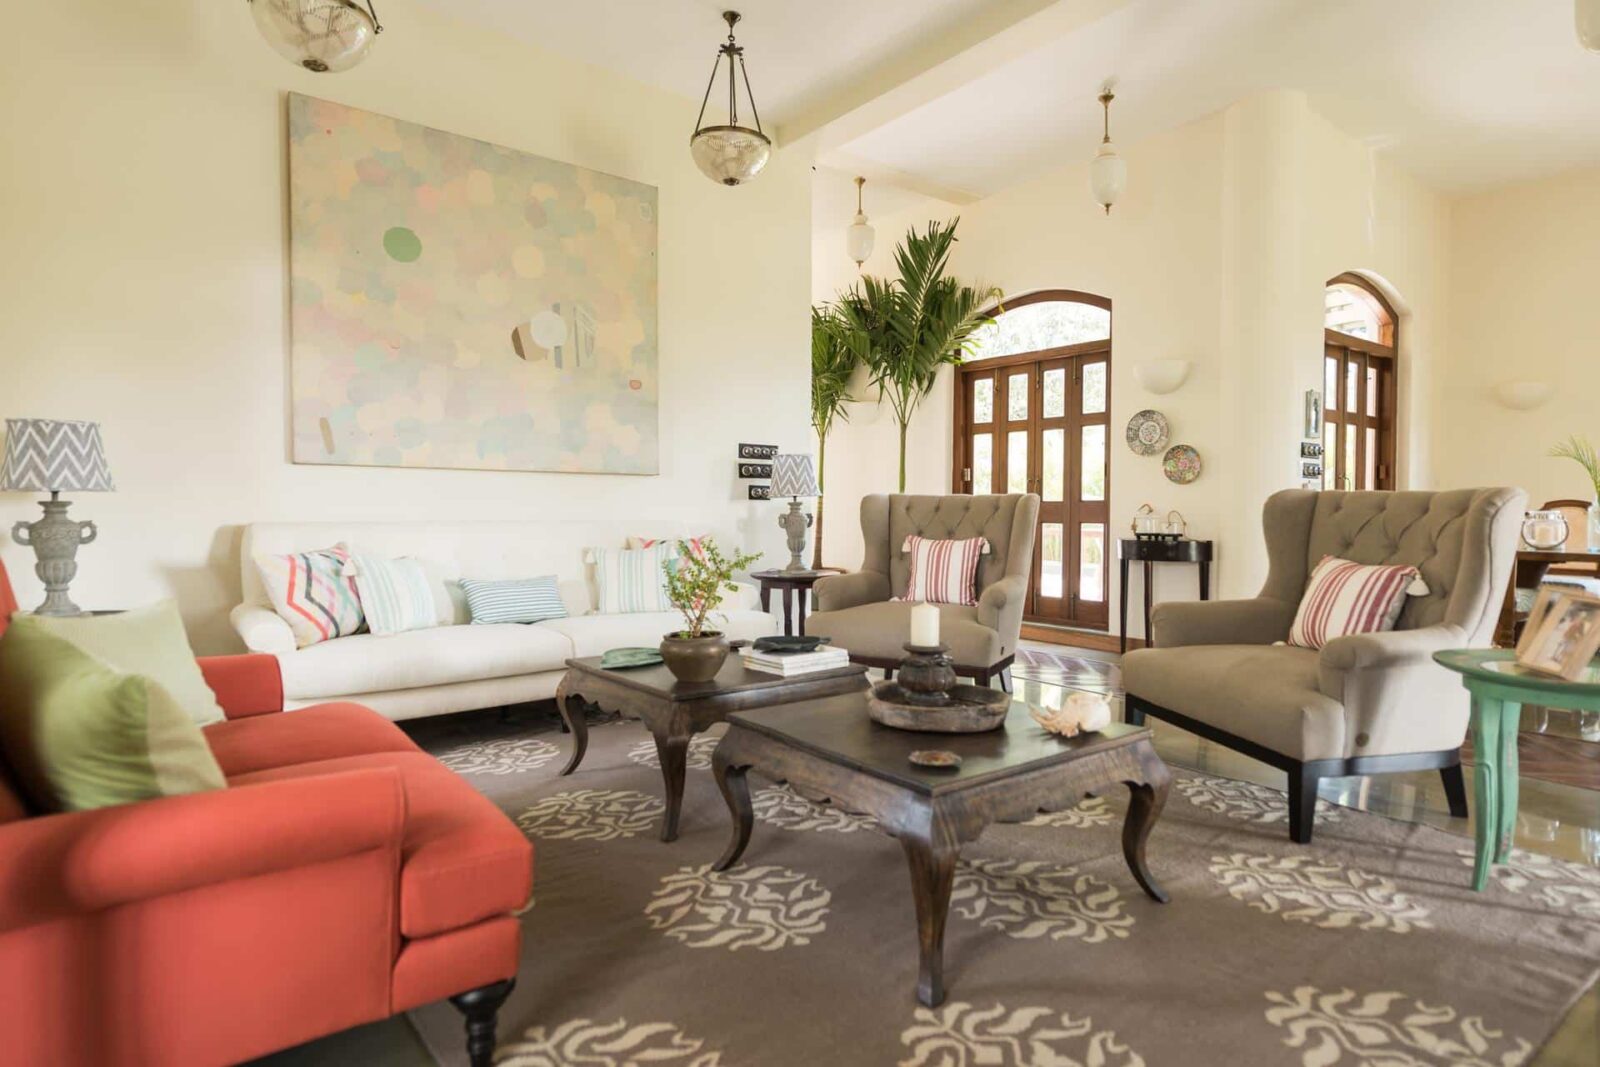 Casa Brava - Luxury Villa in Goa for Sale - Cozy Couch